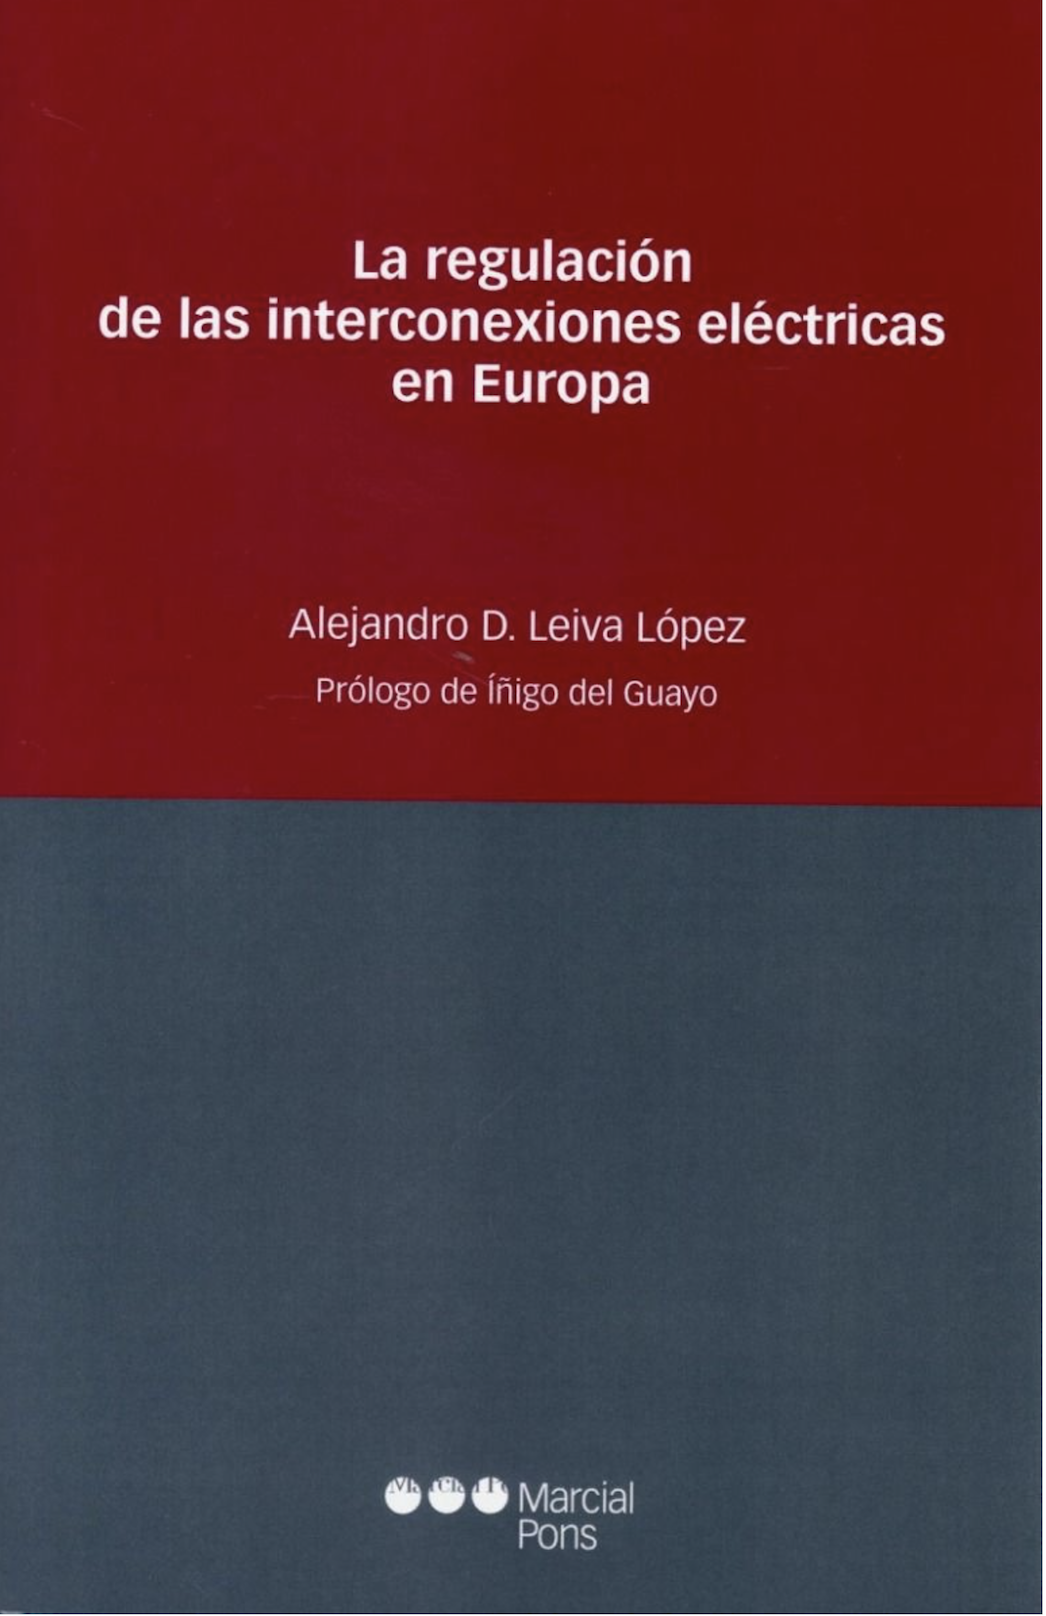 Imagen de portada del libro La regulación de las interconexiones eléctricas en Europa